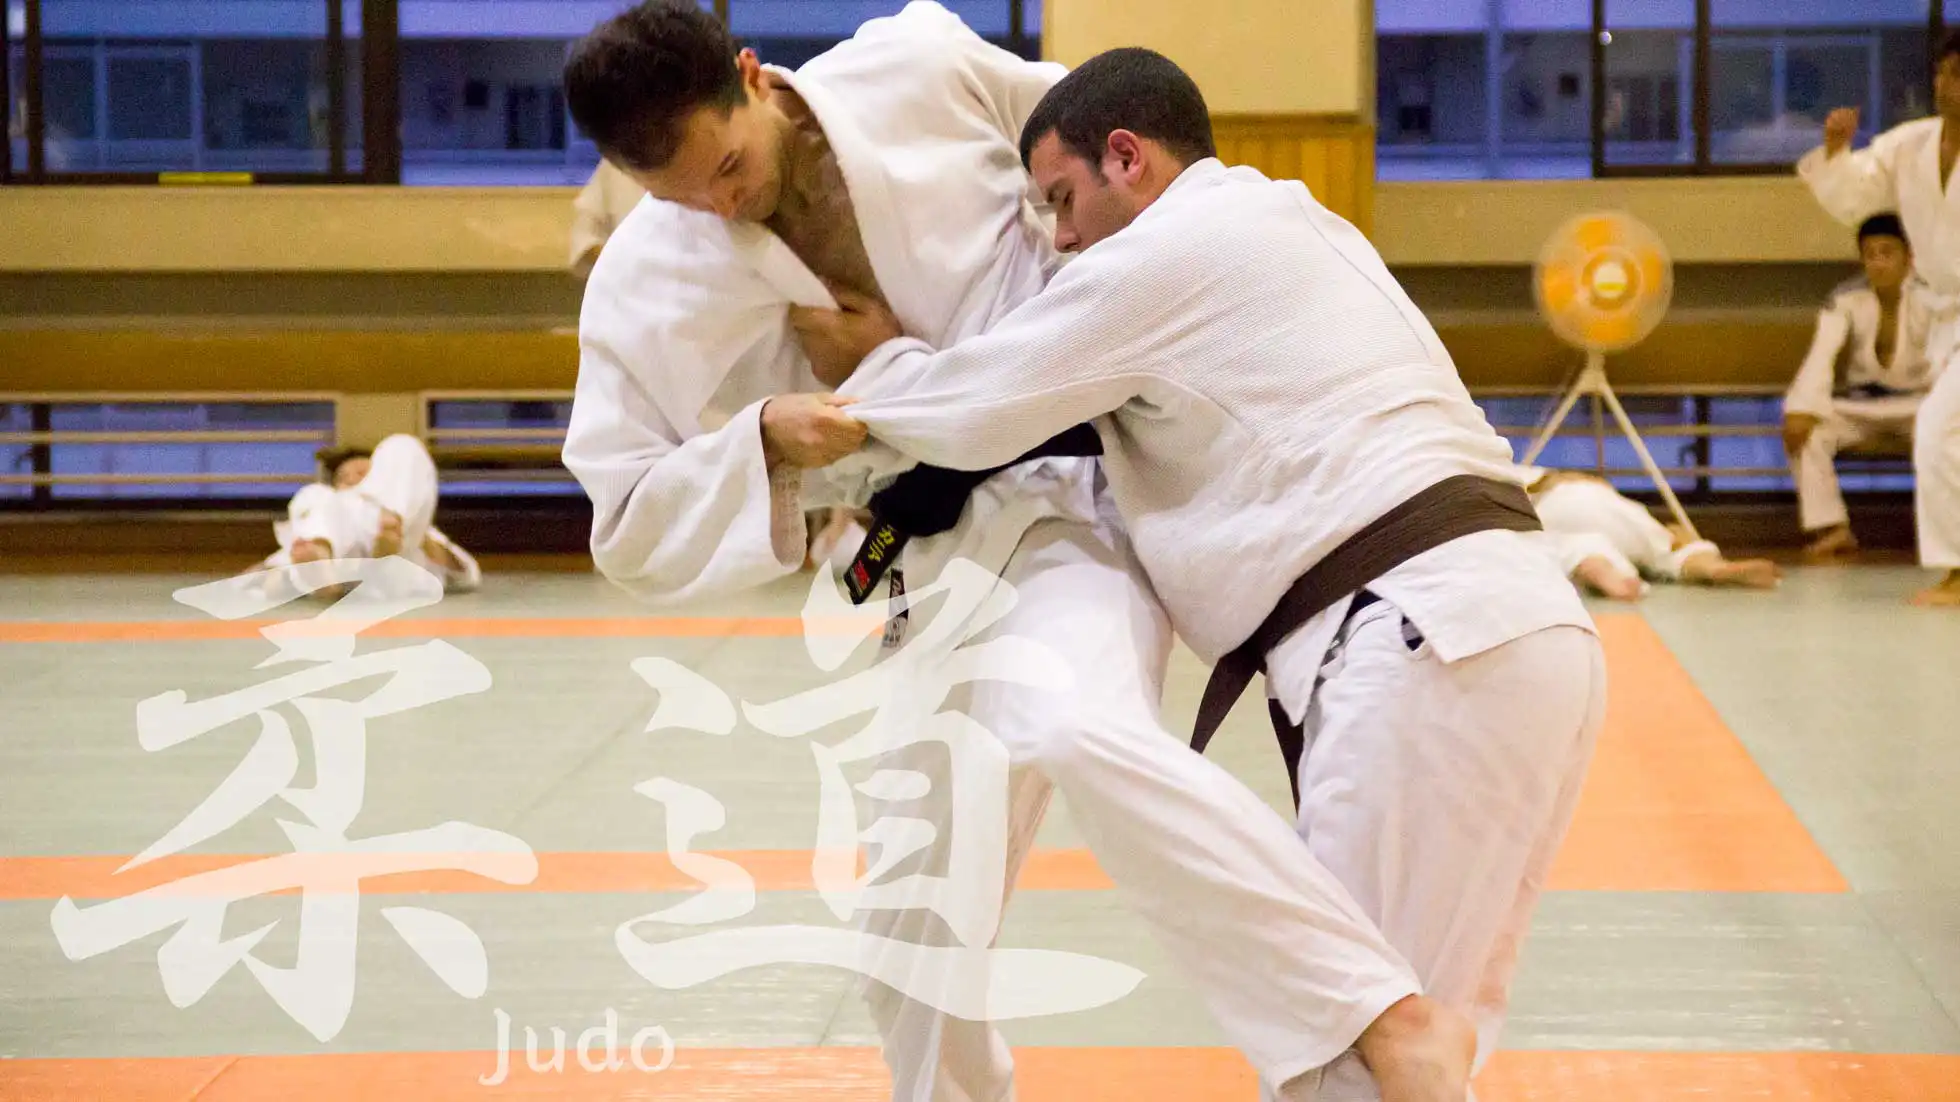 Judocourse